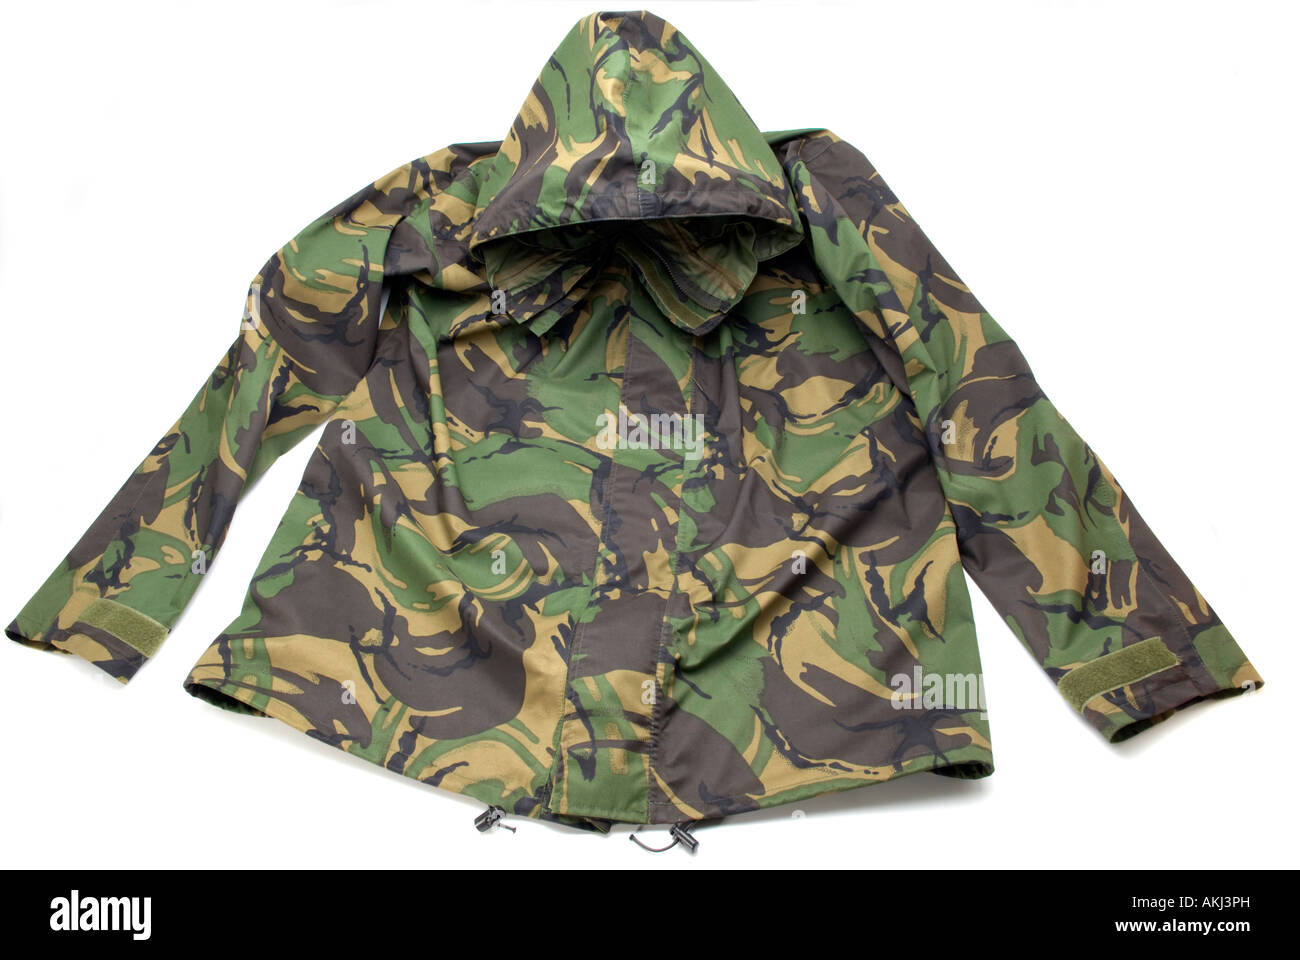 British Forces issue camouflage rainproof jacket Stock Photo